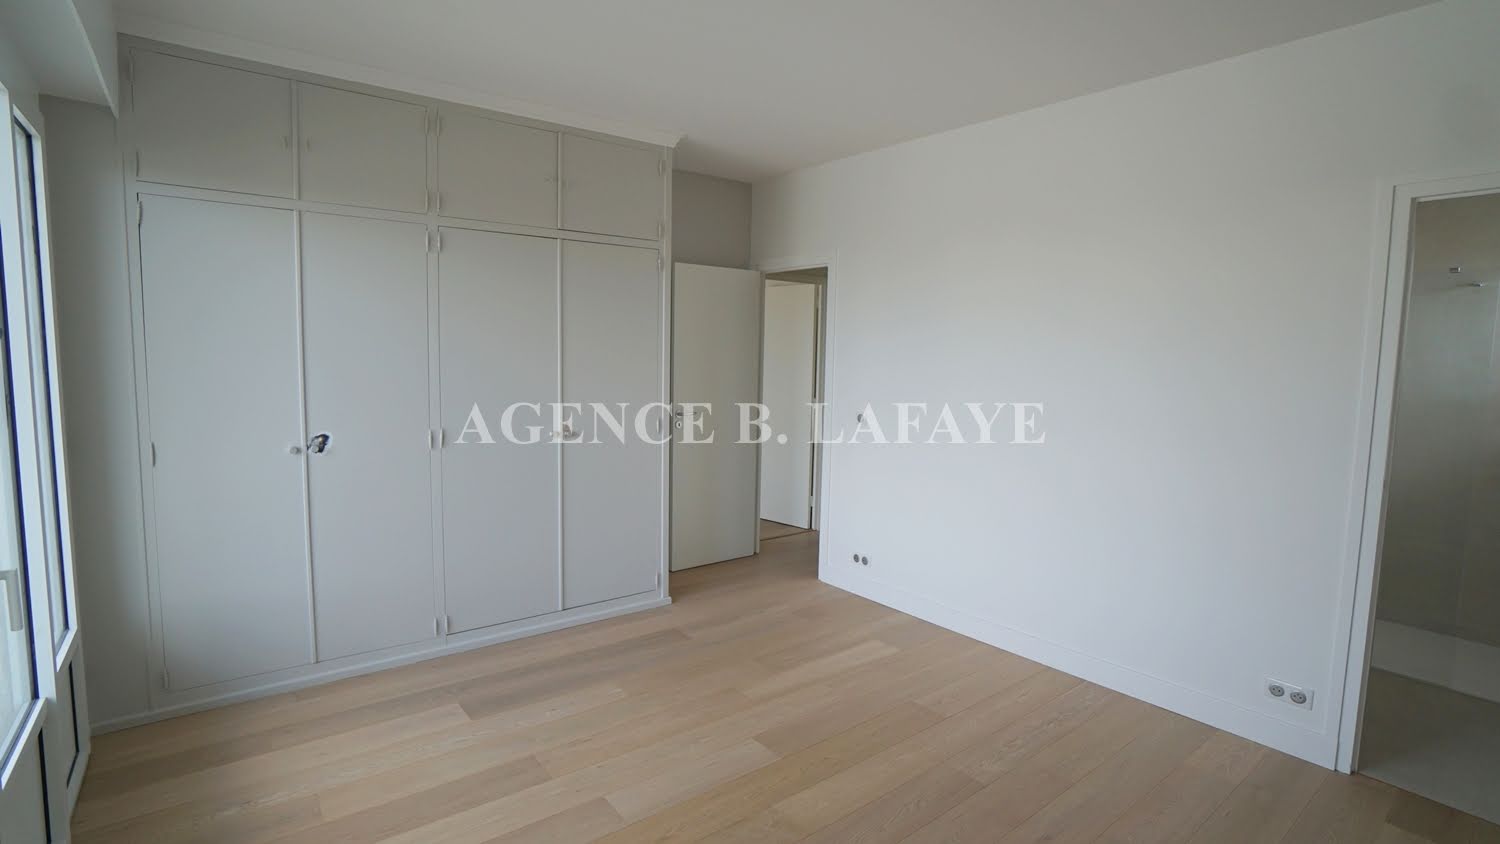 Location appartement 5 pièces 171,68 m2